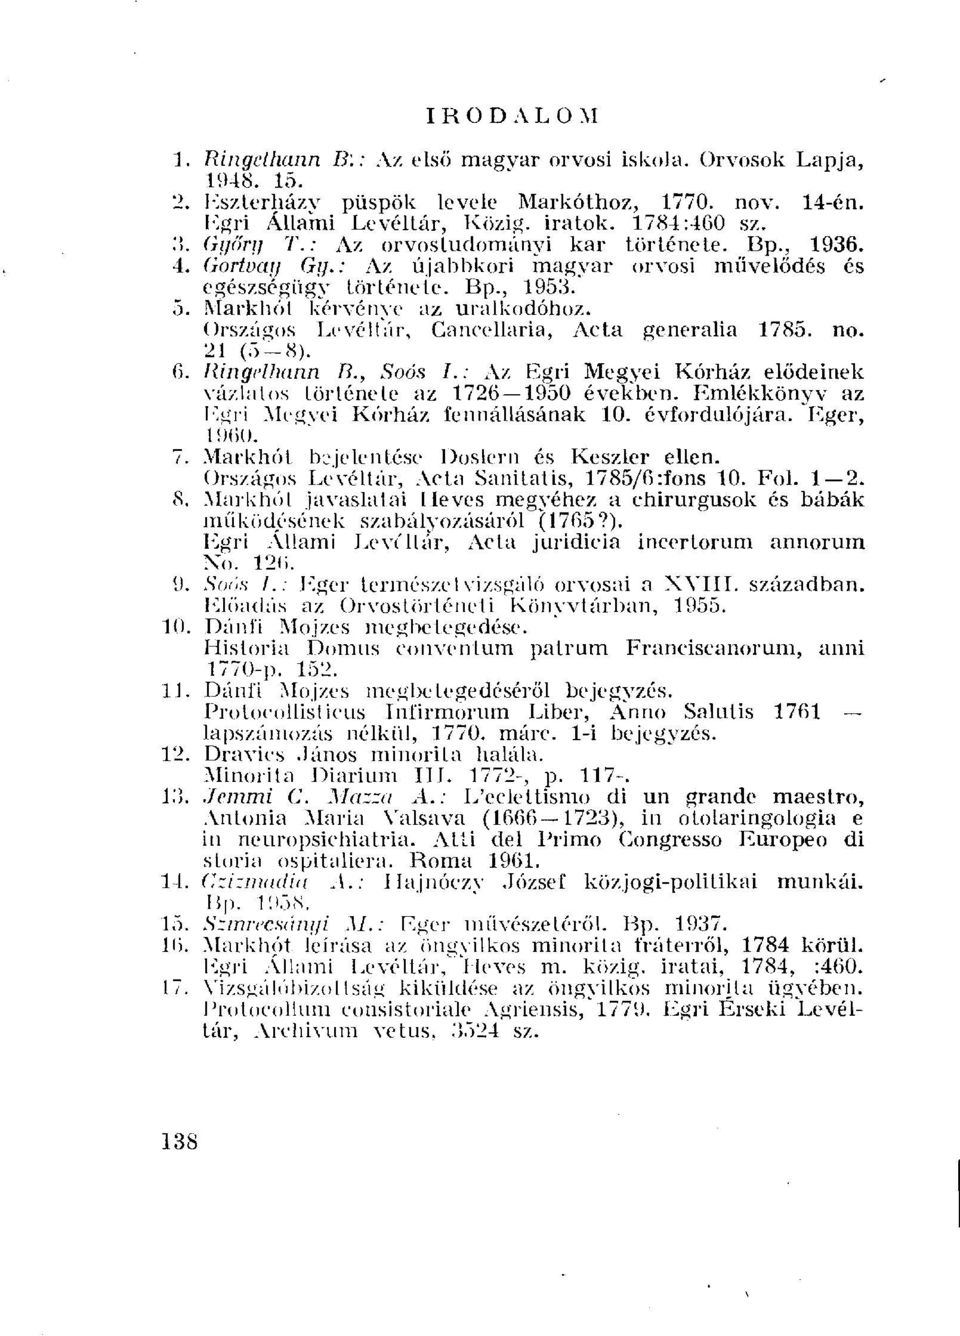 Országos Levéltár, Ganeellaria, Acta generalia 1785. no. 21 (5-8). 6. liingelhann B., Soós I.: Az Egri Megyei Kórház elődeinek vázlatos története az 1726 1950 években.